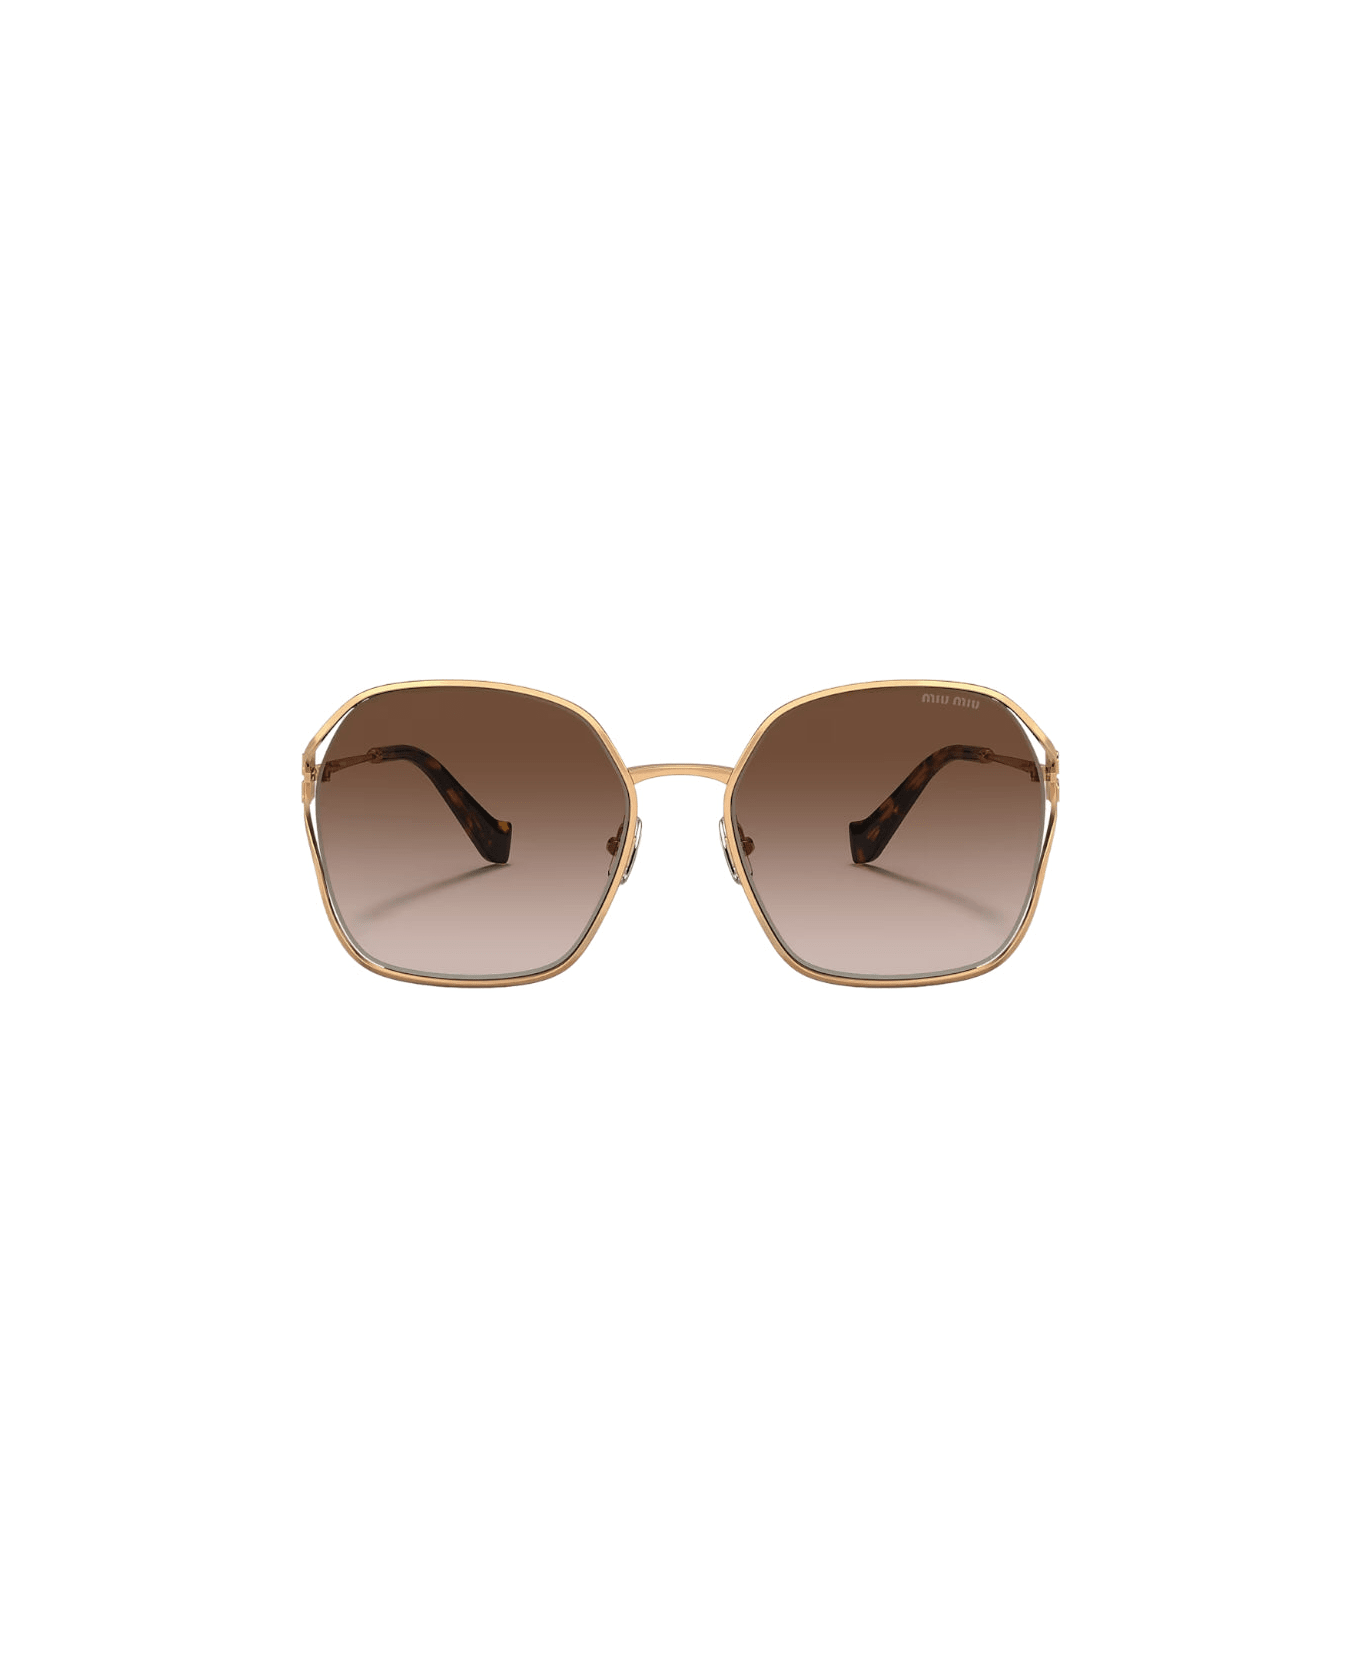 Miu Miu 0mu 52ws - Gold Sunglasses サングラス